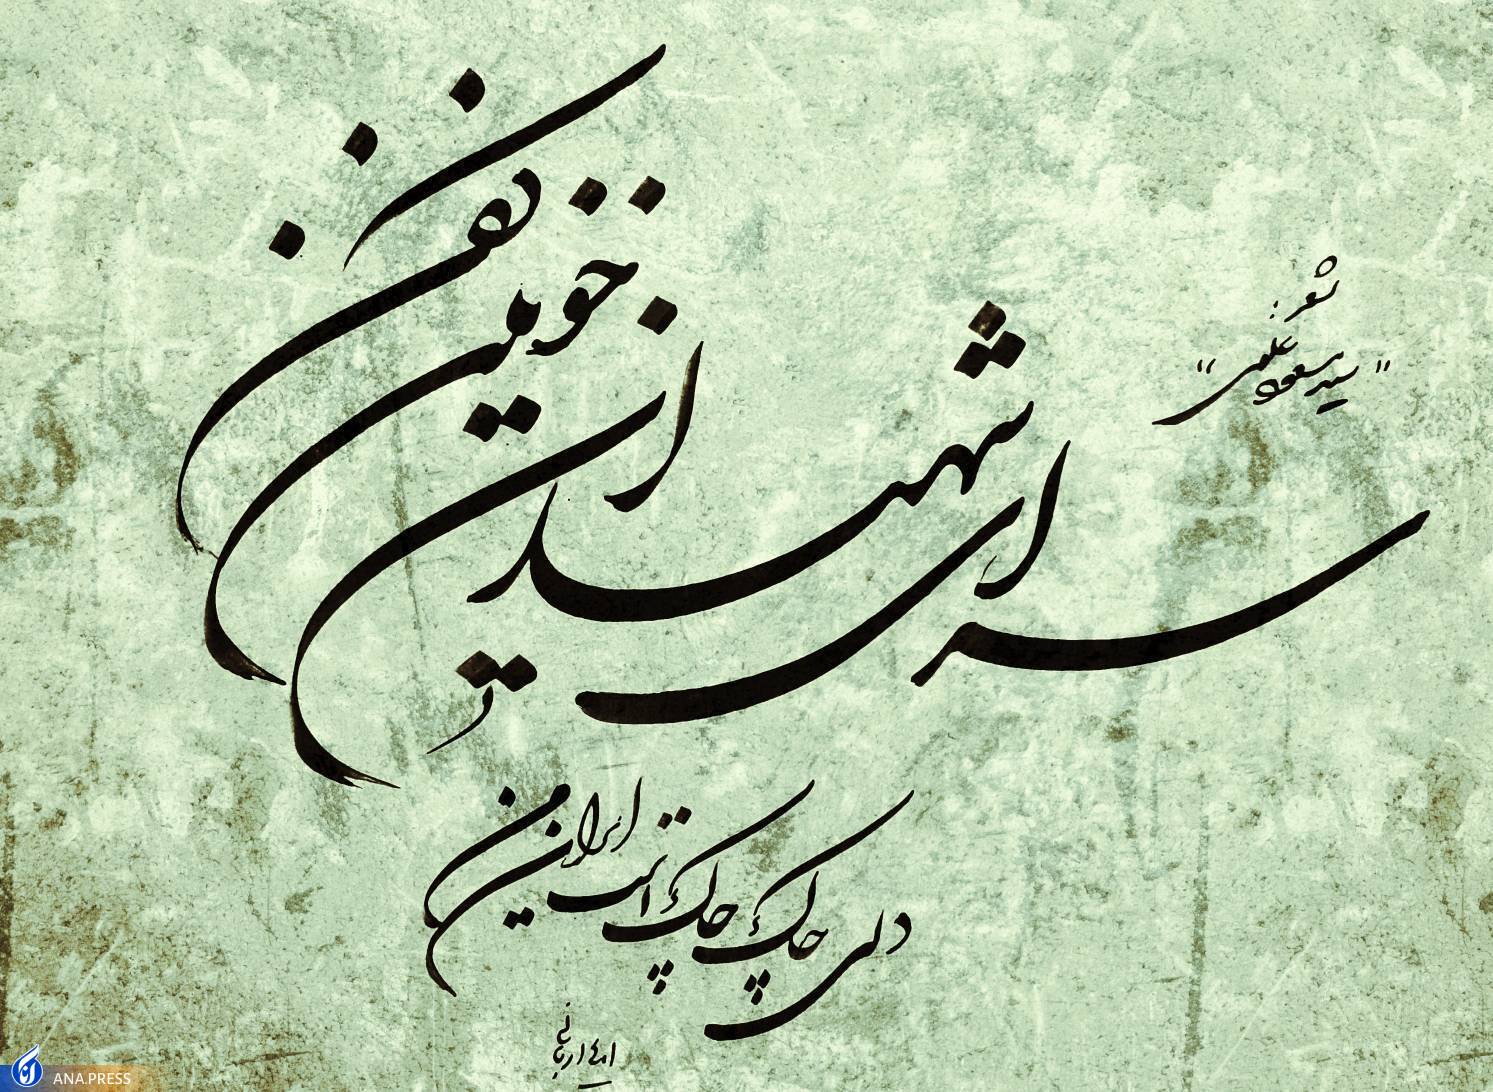 مجموعه شعر «با کمال افتخار ایرانی ام»؛ اثری که در یک شب سروده شد